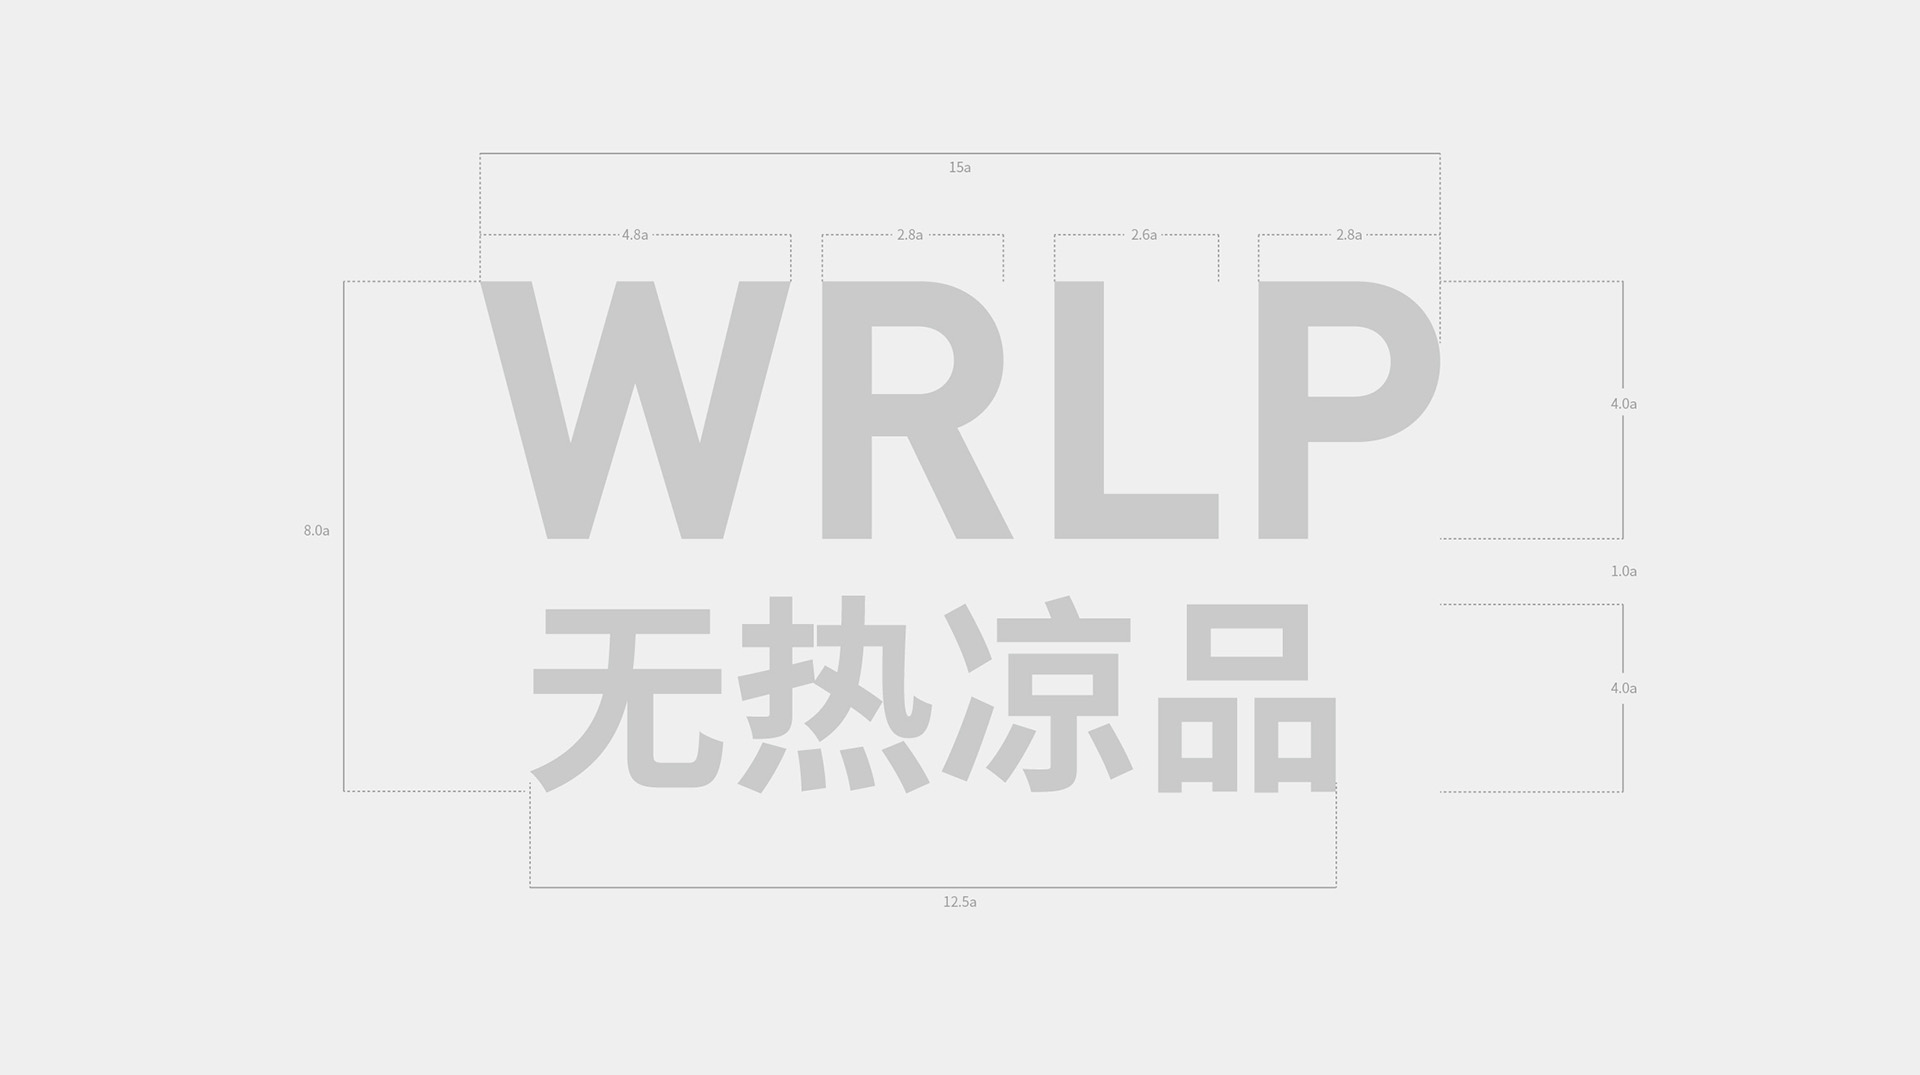 无热凉品(WRLP)产品品牌策略设计案例